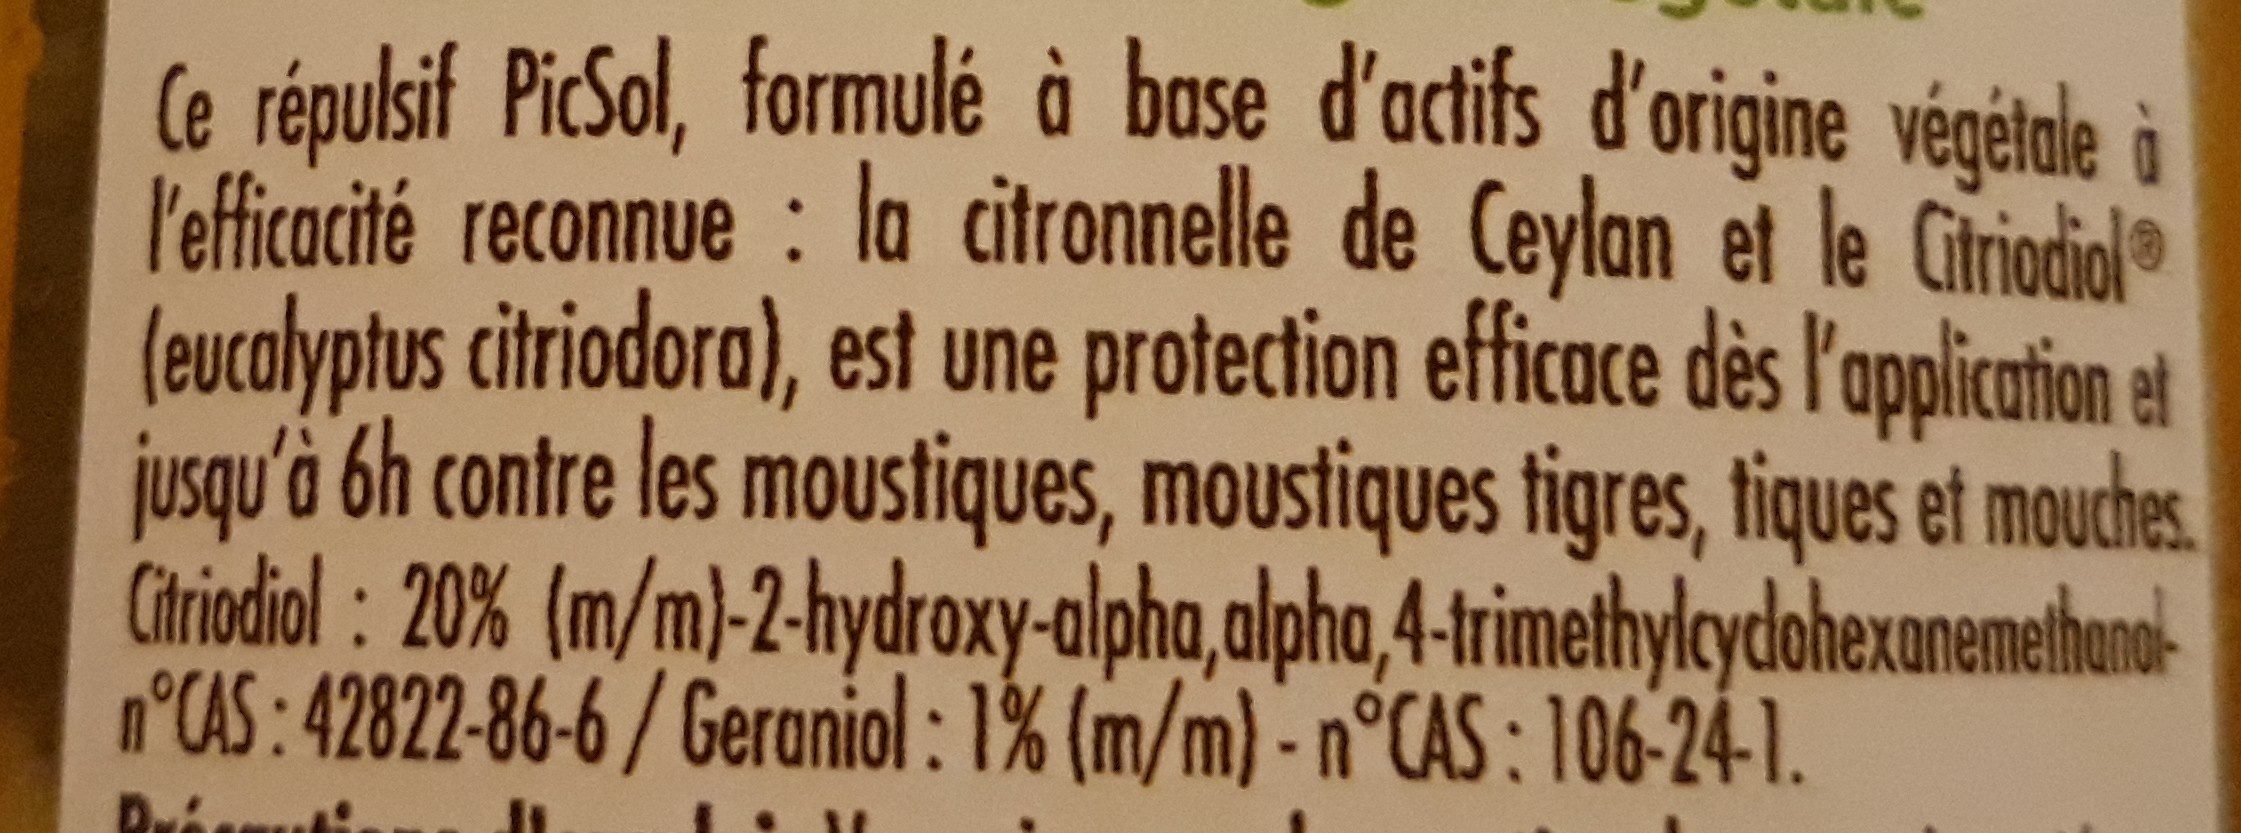 Anti moustique citronnelle - Ingrédients - fr